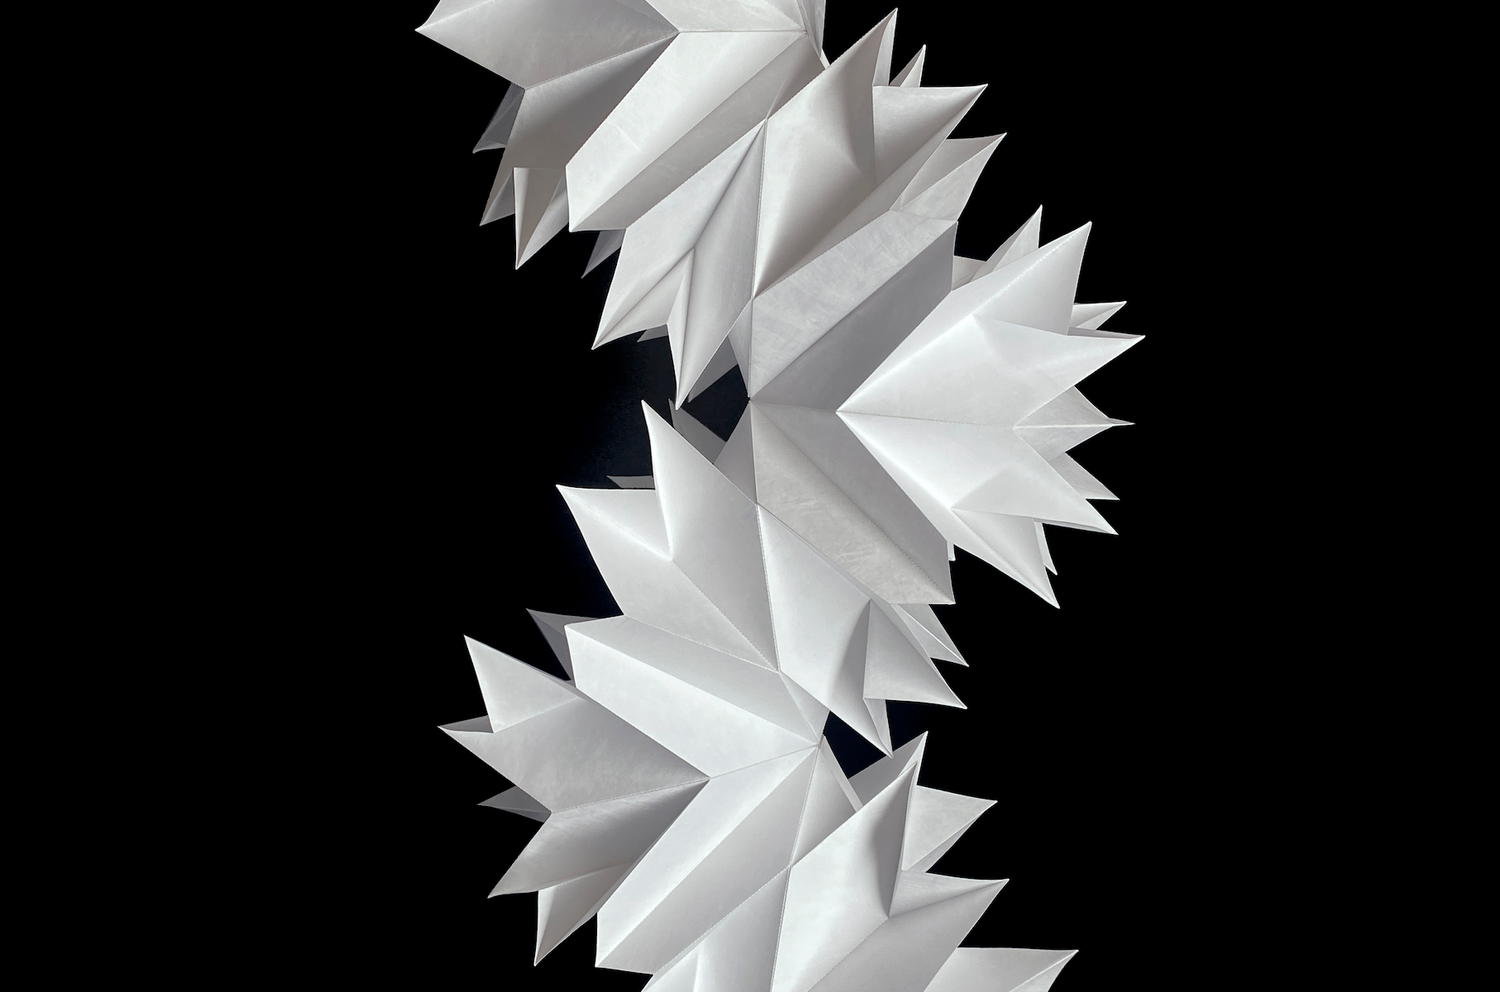 Misfold kinetic sculpture by Matt Shlian